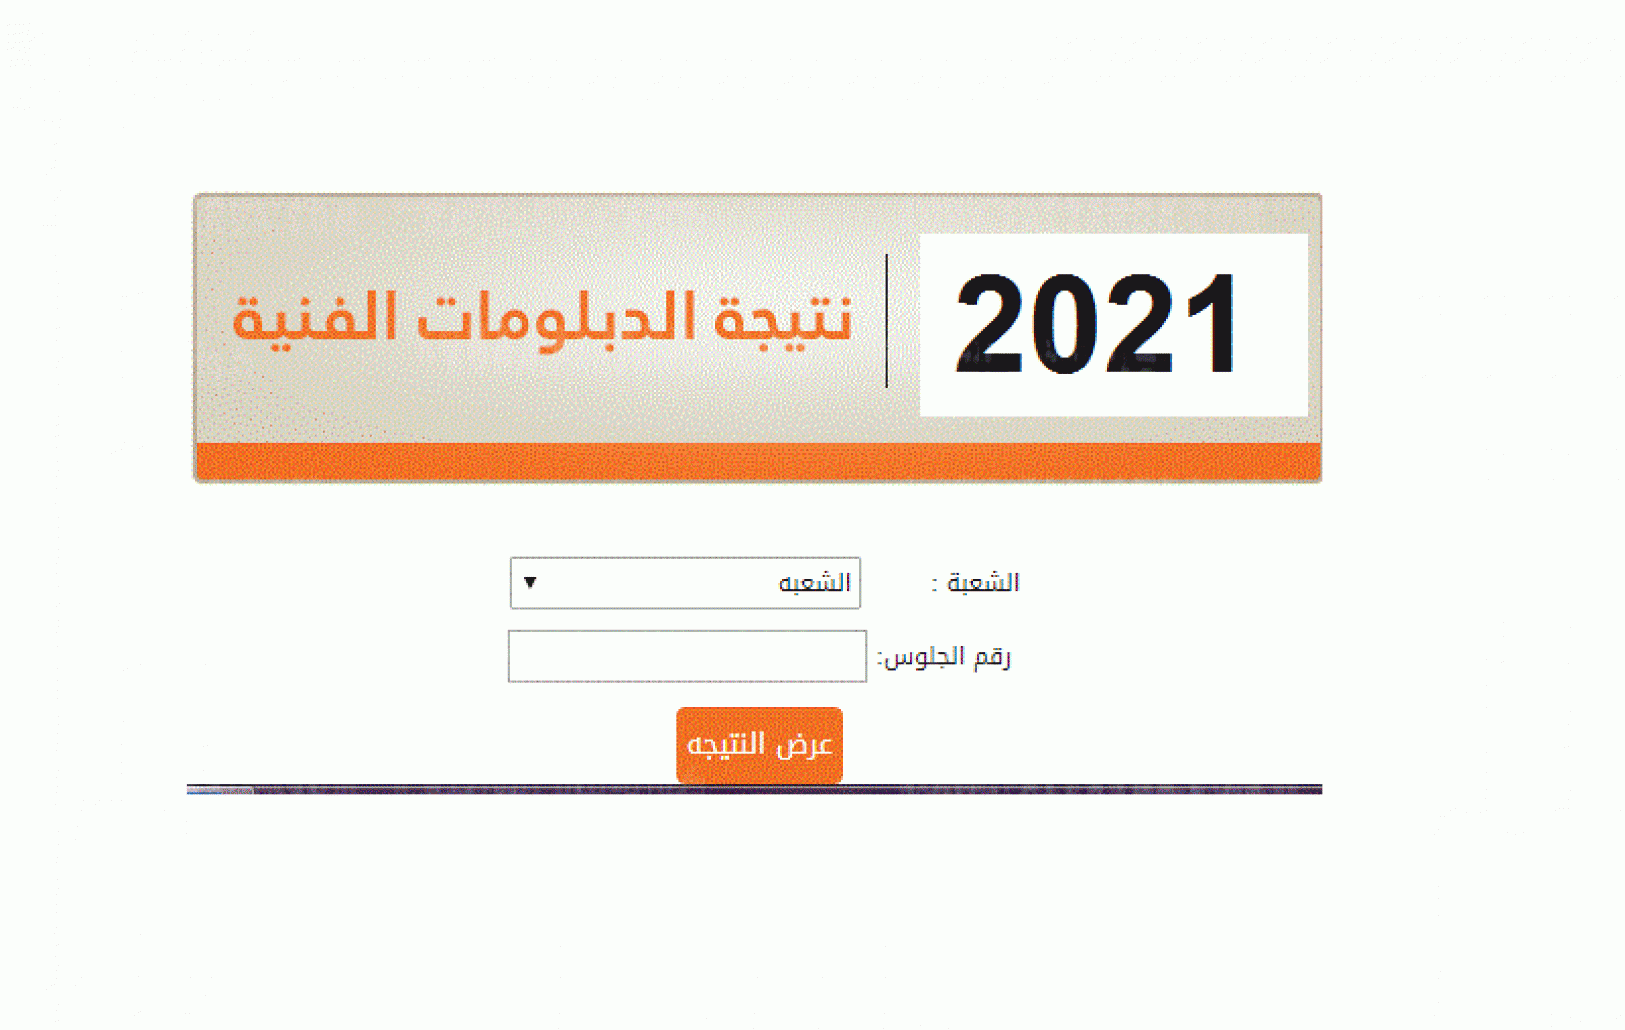 نتيجة الدبلومات الفنية 2021 في محافظة مطروح الآن